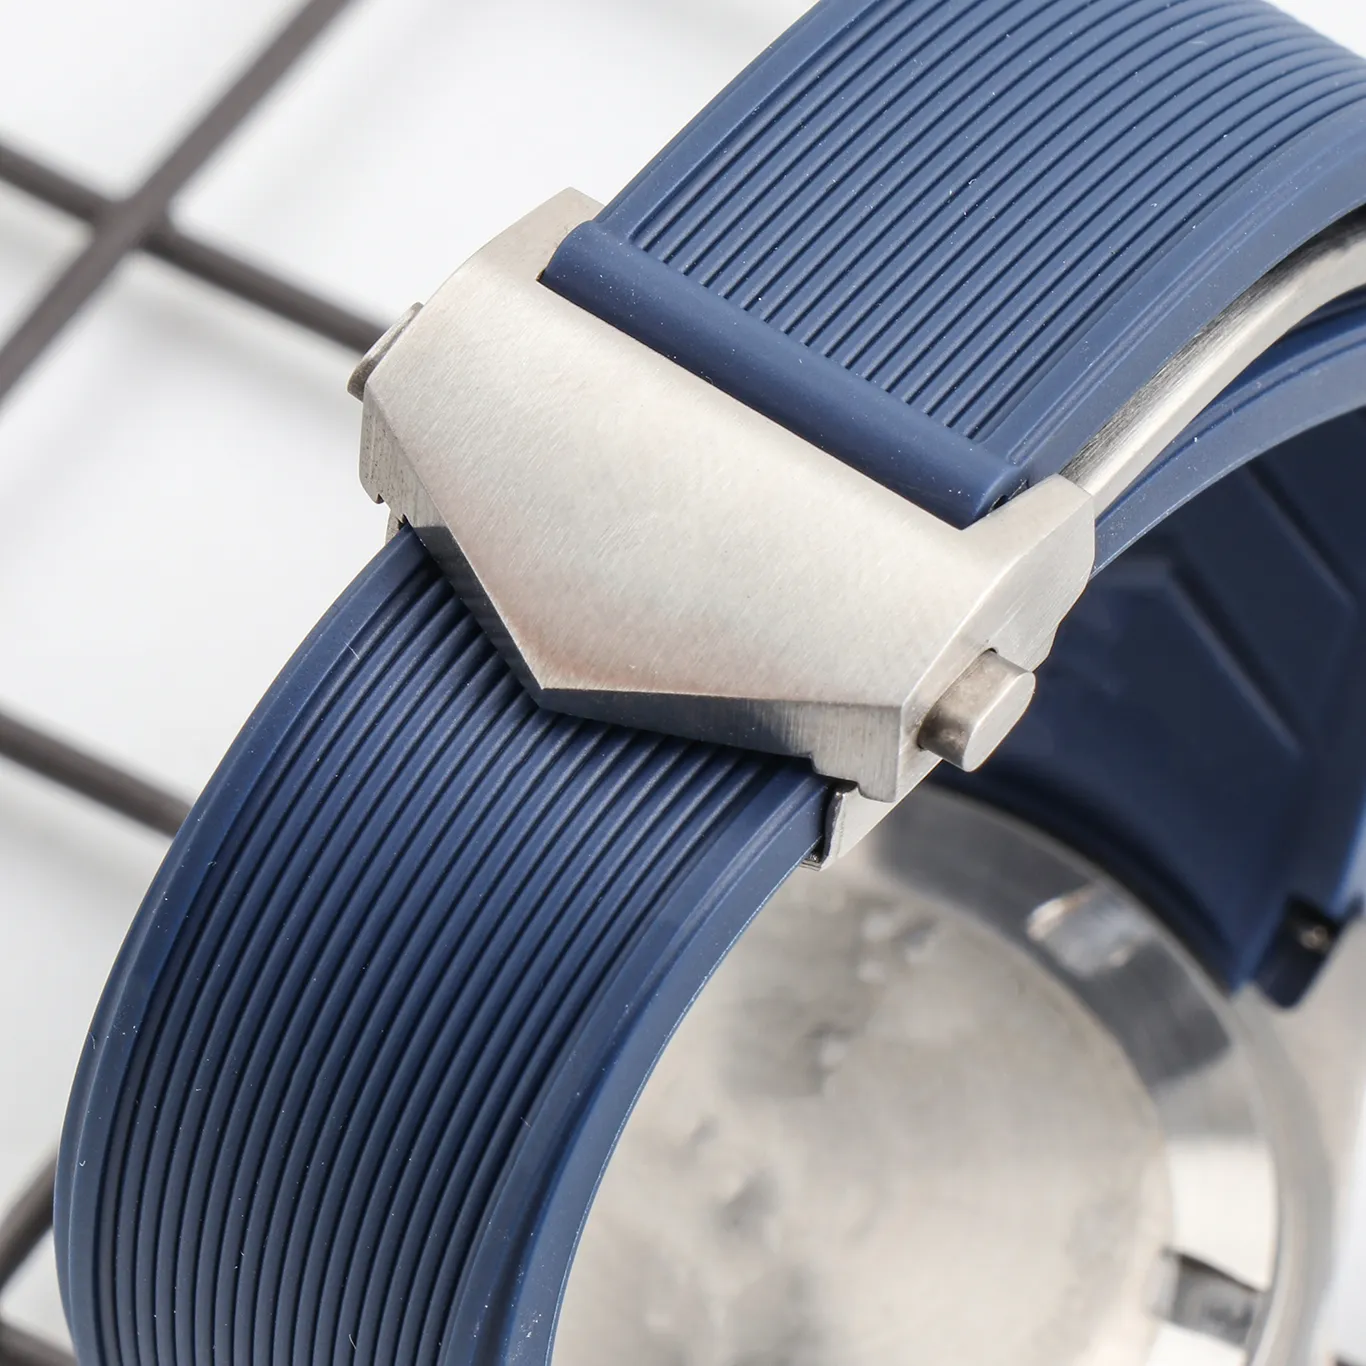 Waterdichte rubberen horlogeband roestvrij staal vouwgesp horlogeband voor AQUARACER armband horloge man 22-18 mm zwart blauw bruin258a